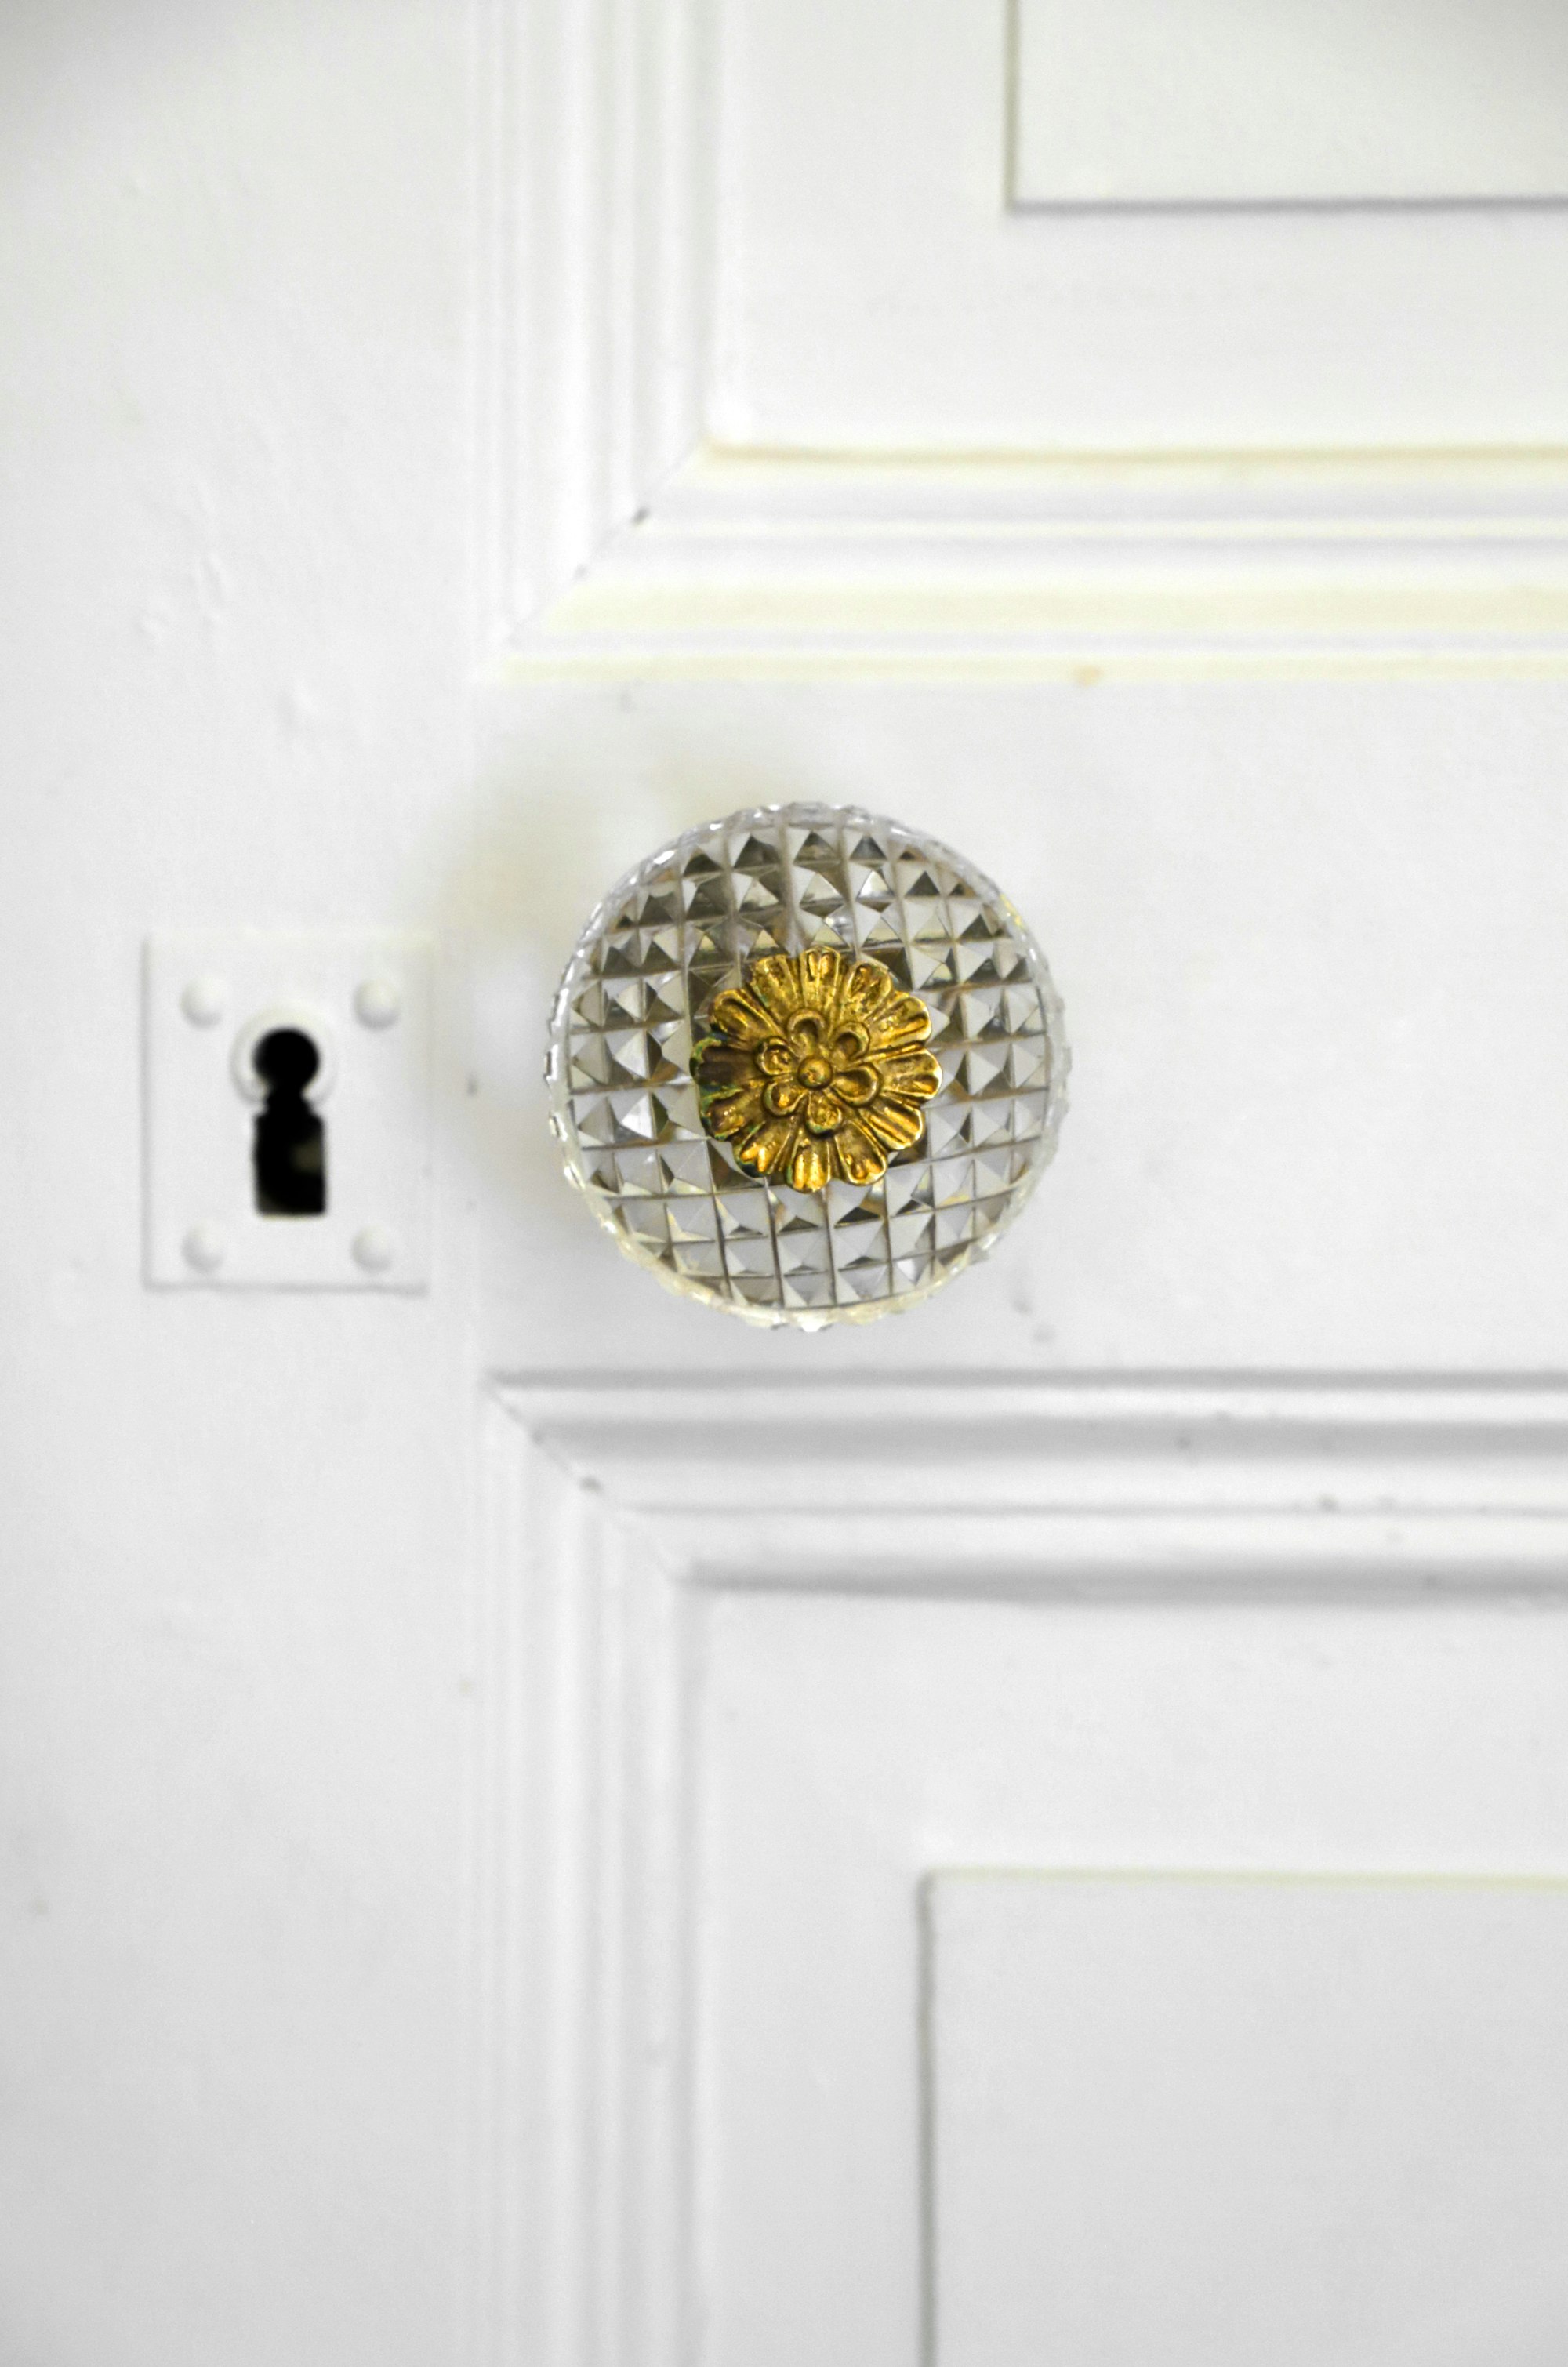 Polishing doorknobs